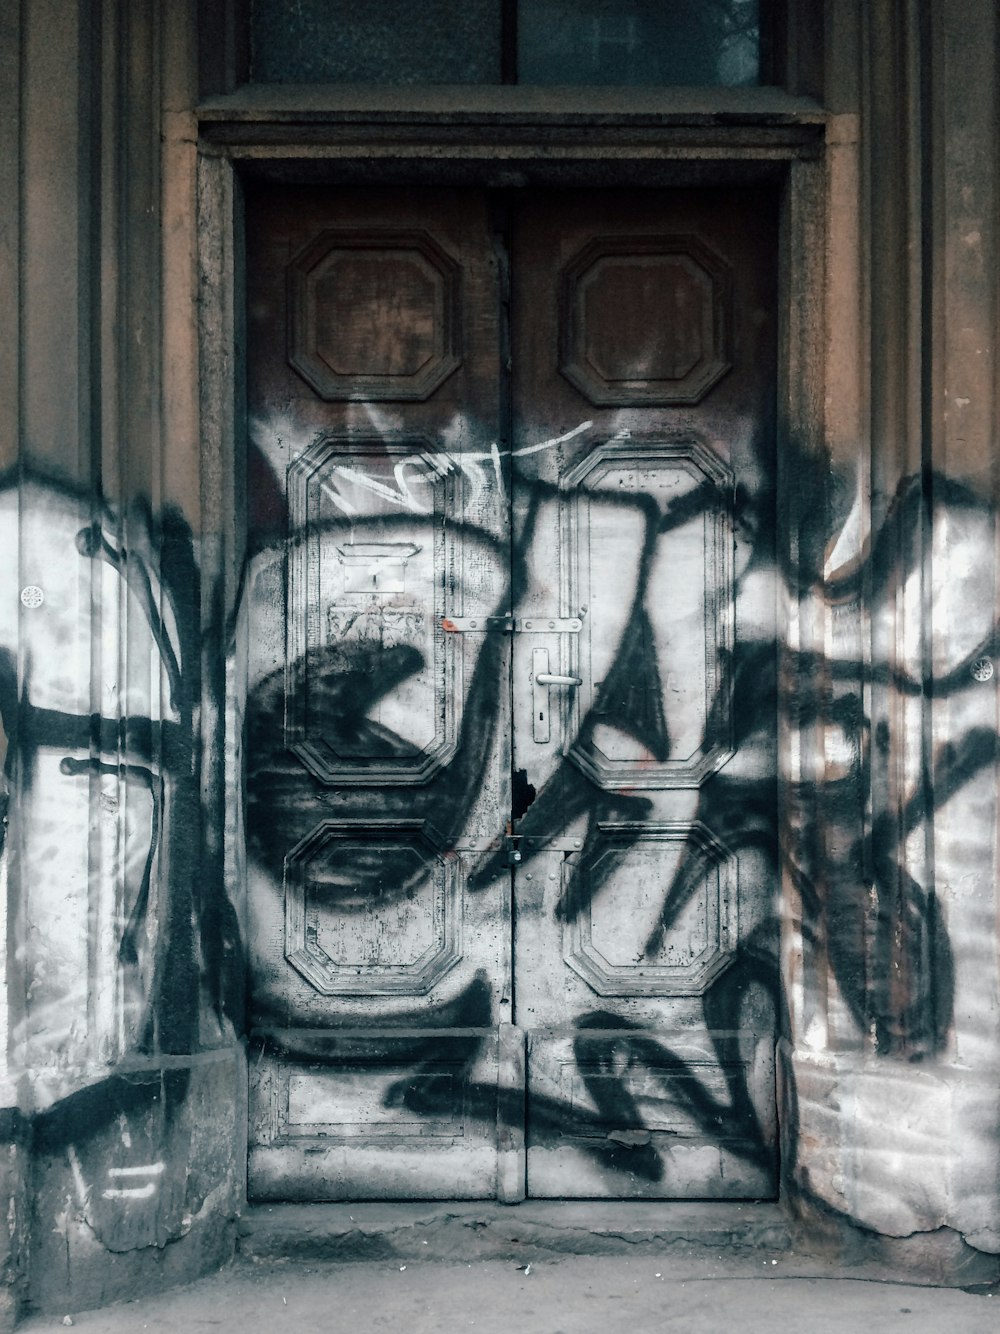 brown wooden door with graffiti